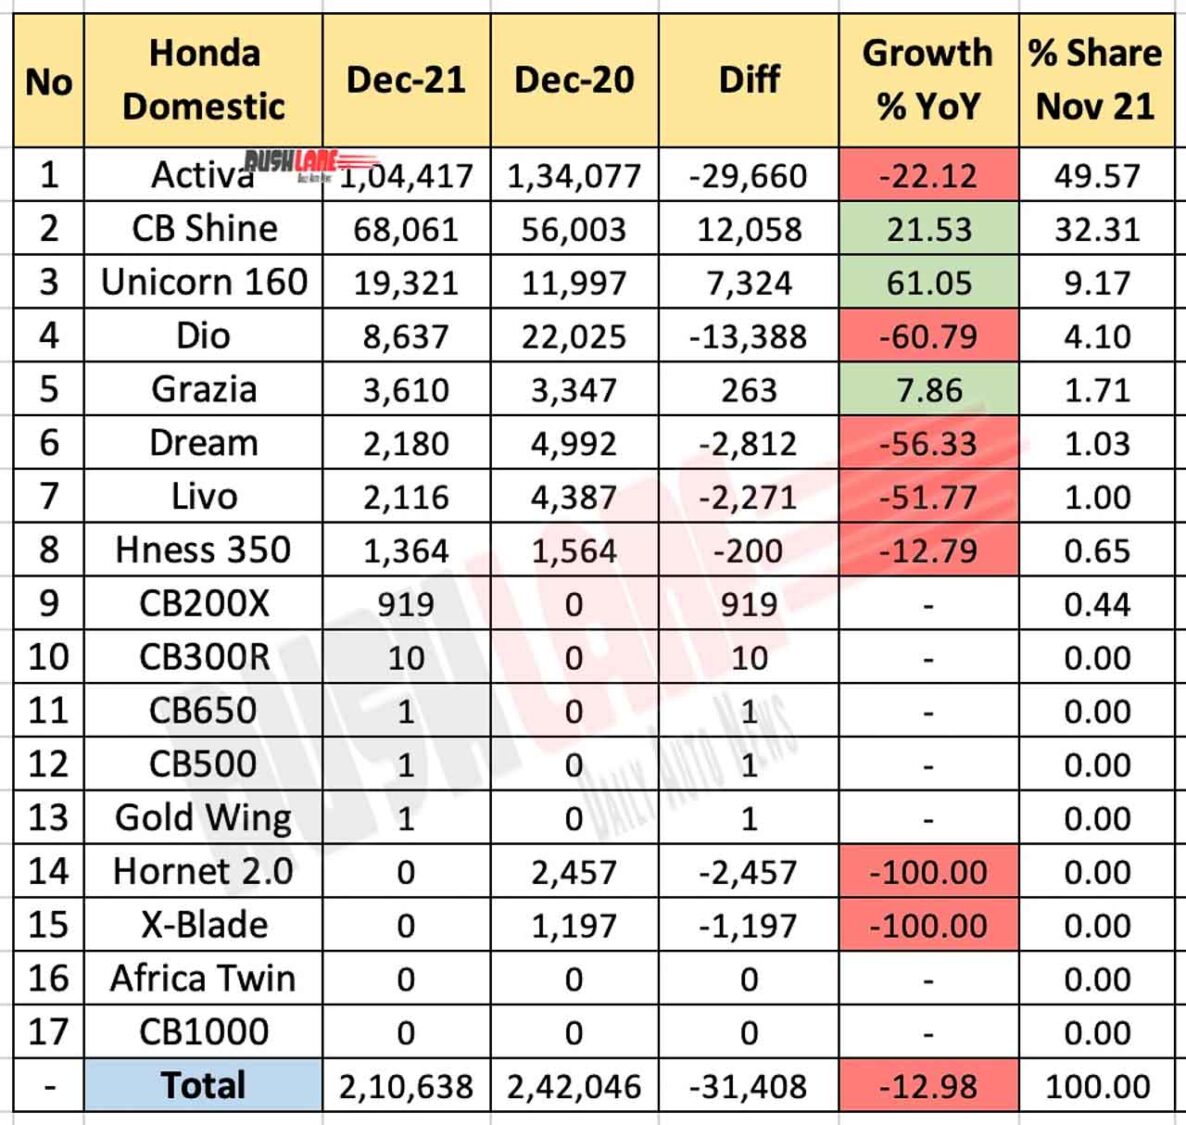 Honda Domestic Sales Dec 2021 Vs Dec 2020 (YoY)